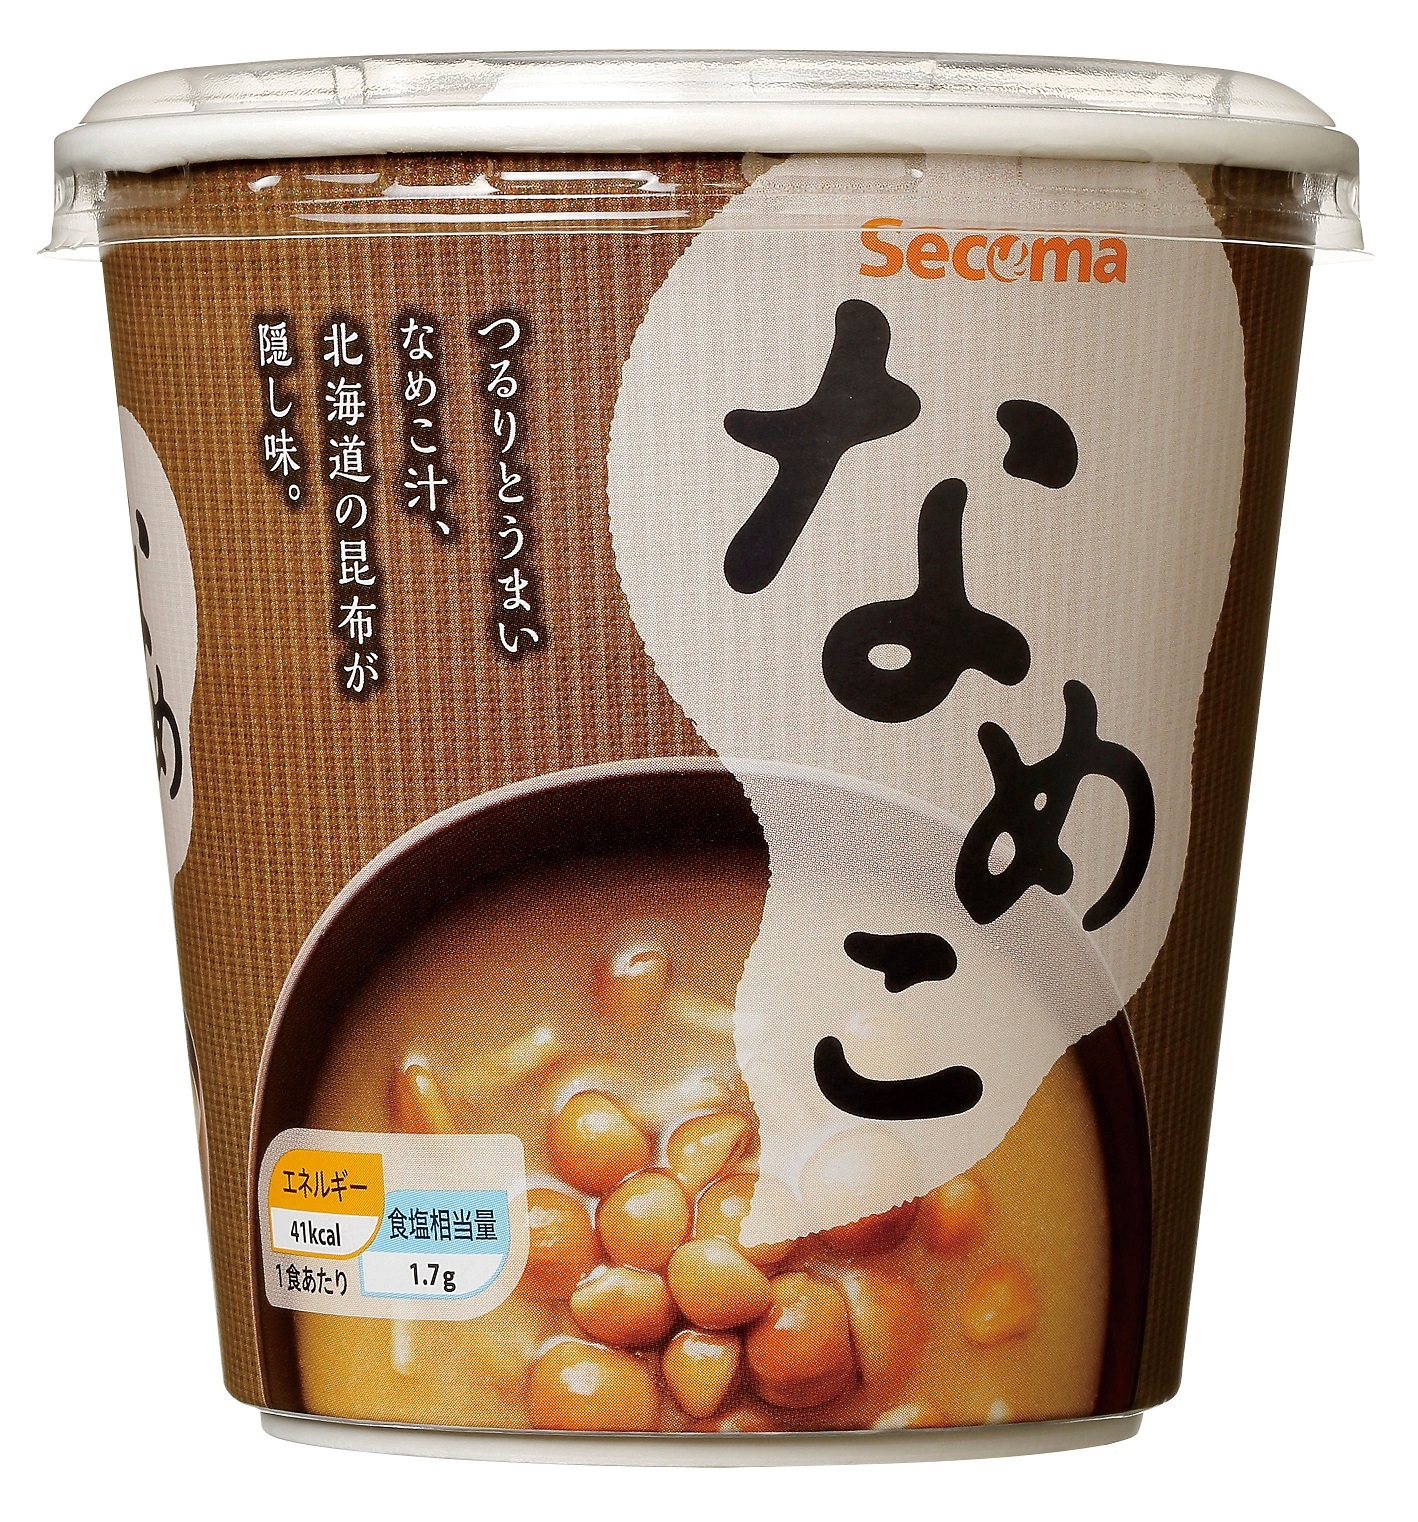 Secoma カップみそ汁 なめこ 6個入 - セイコーマート公式通販